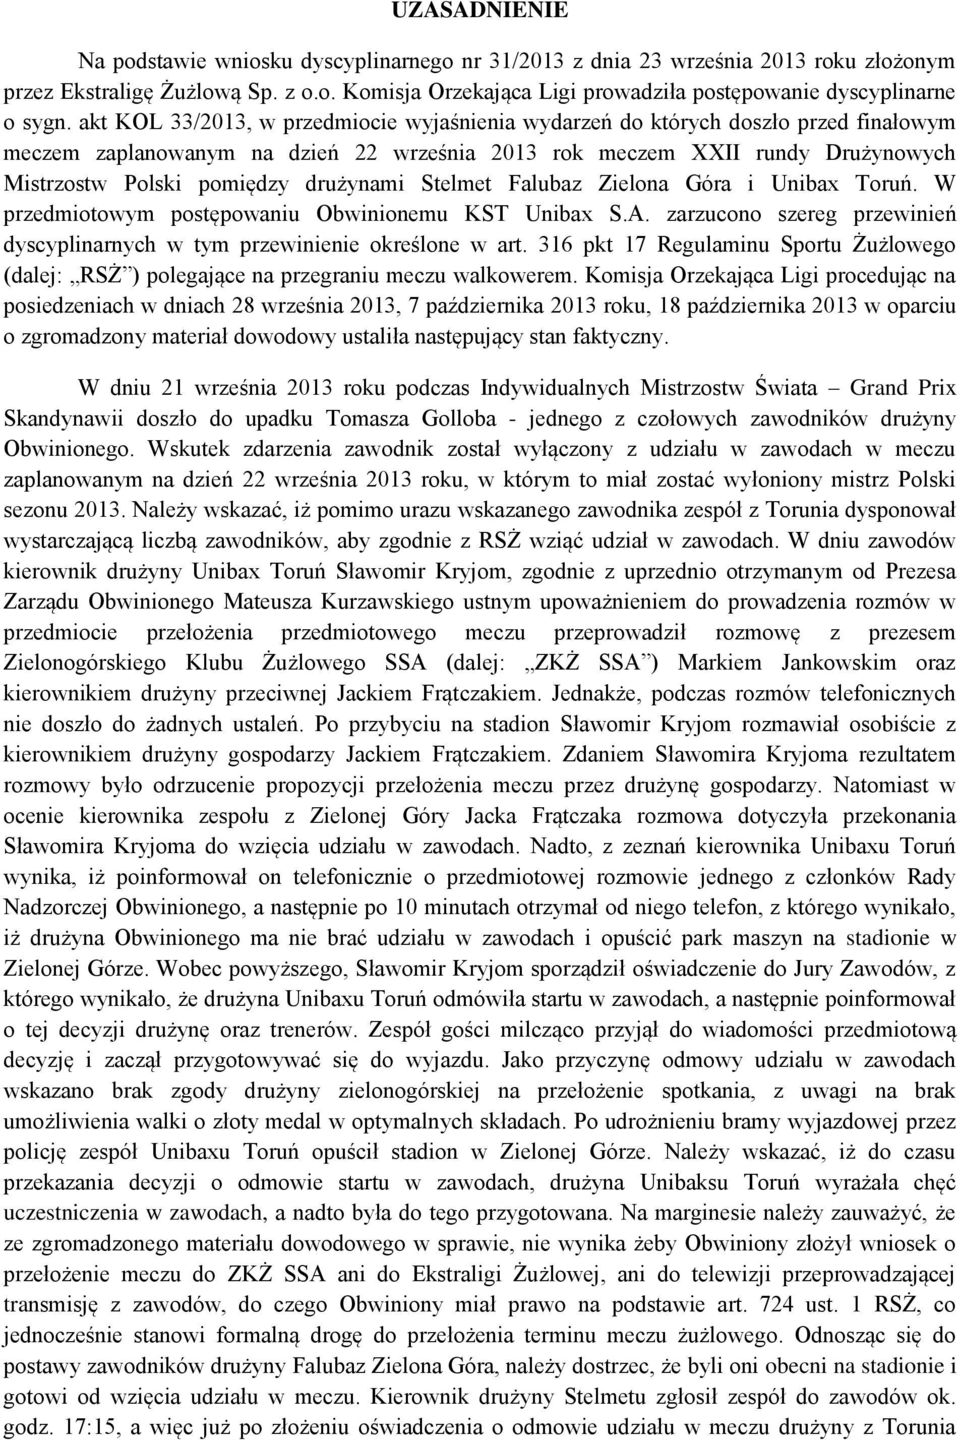 drużynami Stelmet Falubaz Zielona Góra i Unibax Toruń. W przedmiotowym postępowaniu Obwinionemu KST Unibax S.A. zarzucono szereg przewinień dyscyplinarnych w tym przewinienie określone w art.